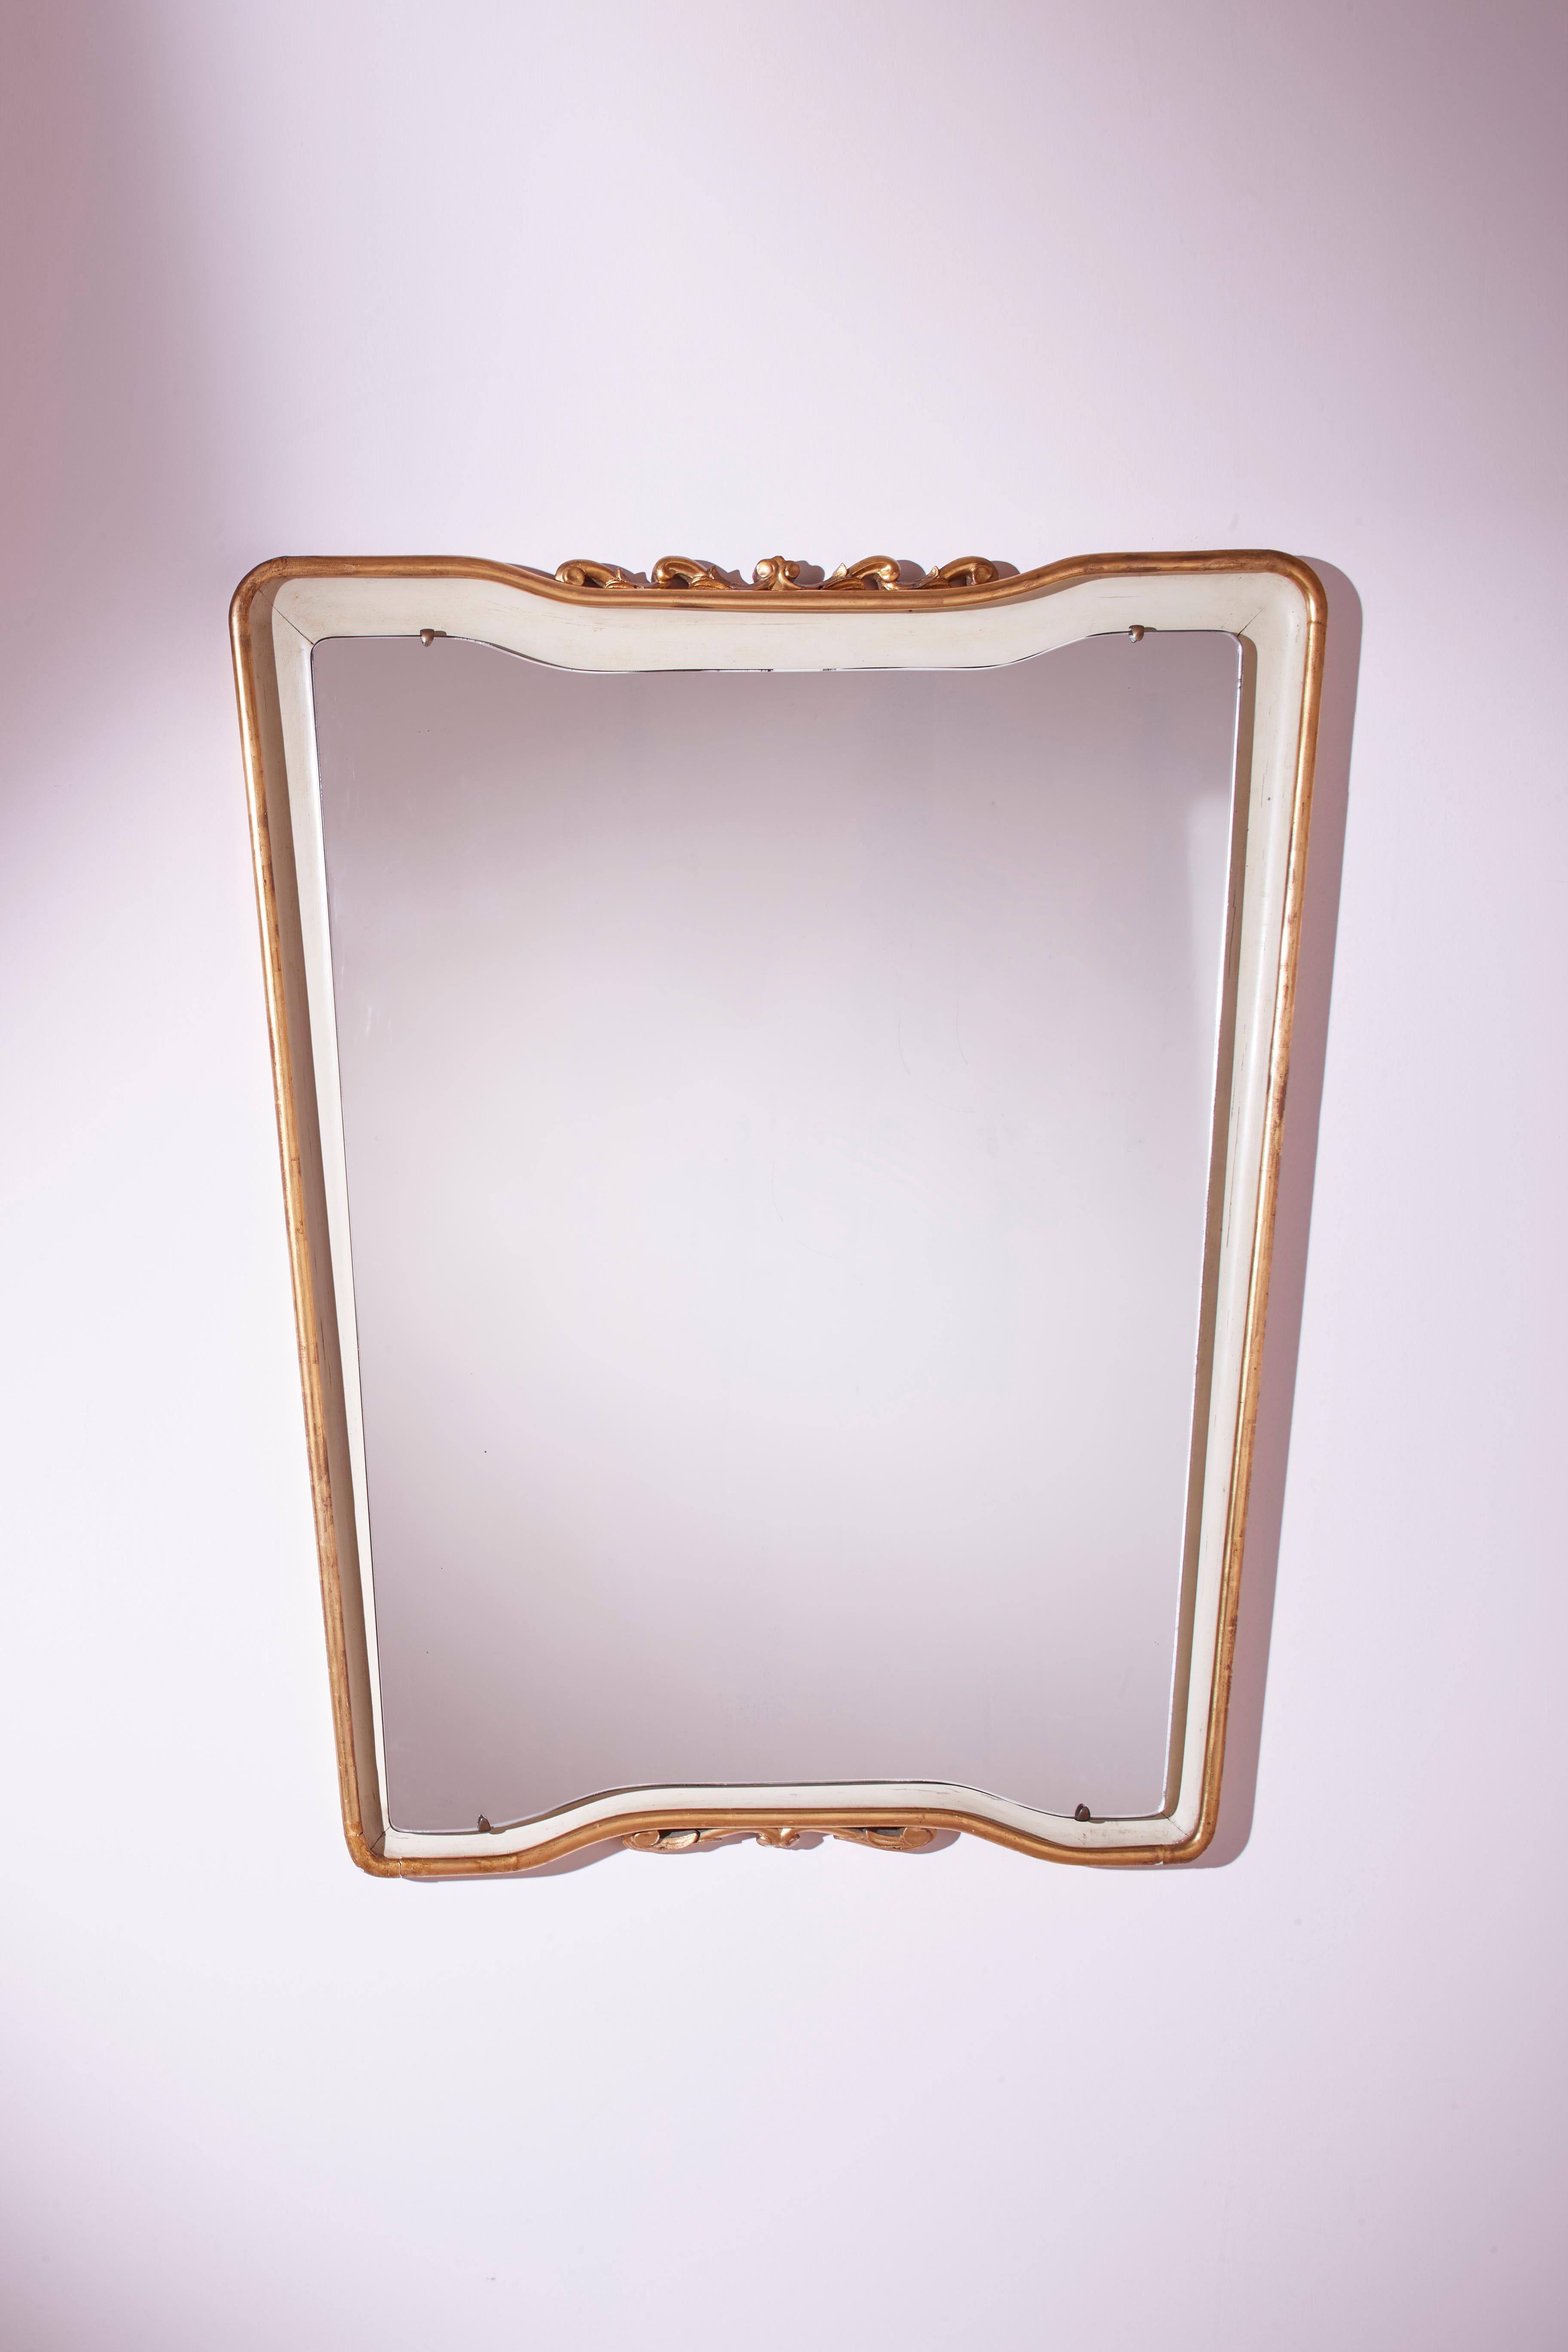 Ein prächtiger trapezförmiger Spiegel mit lackiertem und vergoldetem Rahmen ist eine authentische italienische Kreation aus den 1950er Jahren, entworfen von Osvaldo Borsani.

Dieser beeindruckende Ganzkörperspiegel besteht aus einer Originalplatte